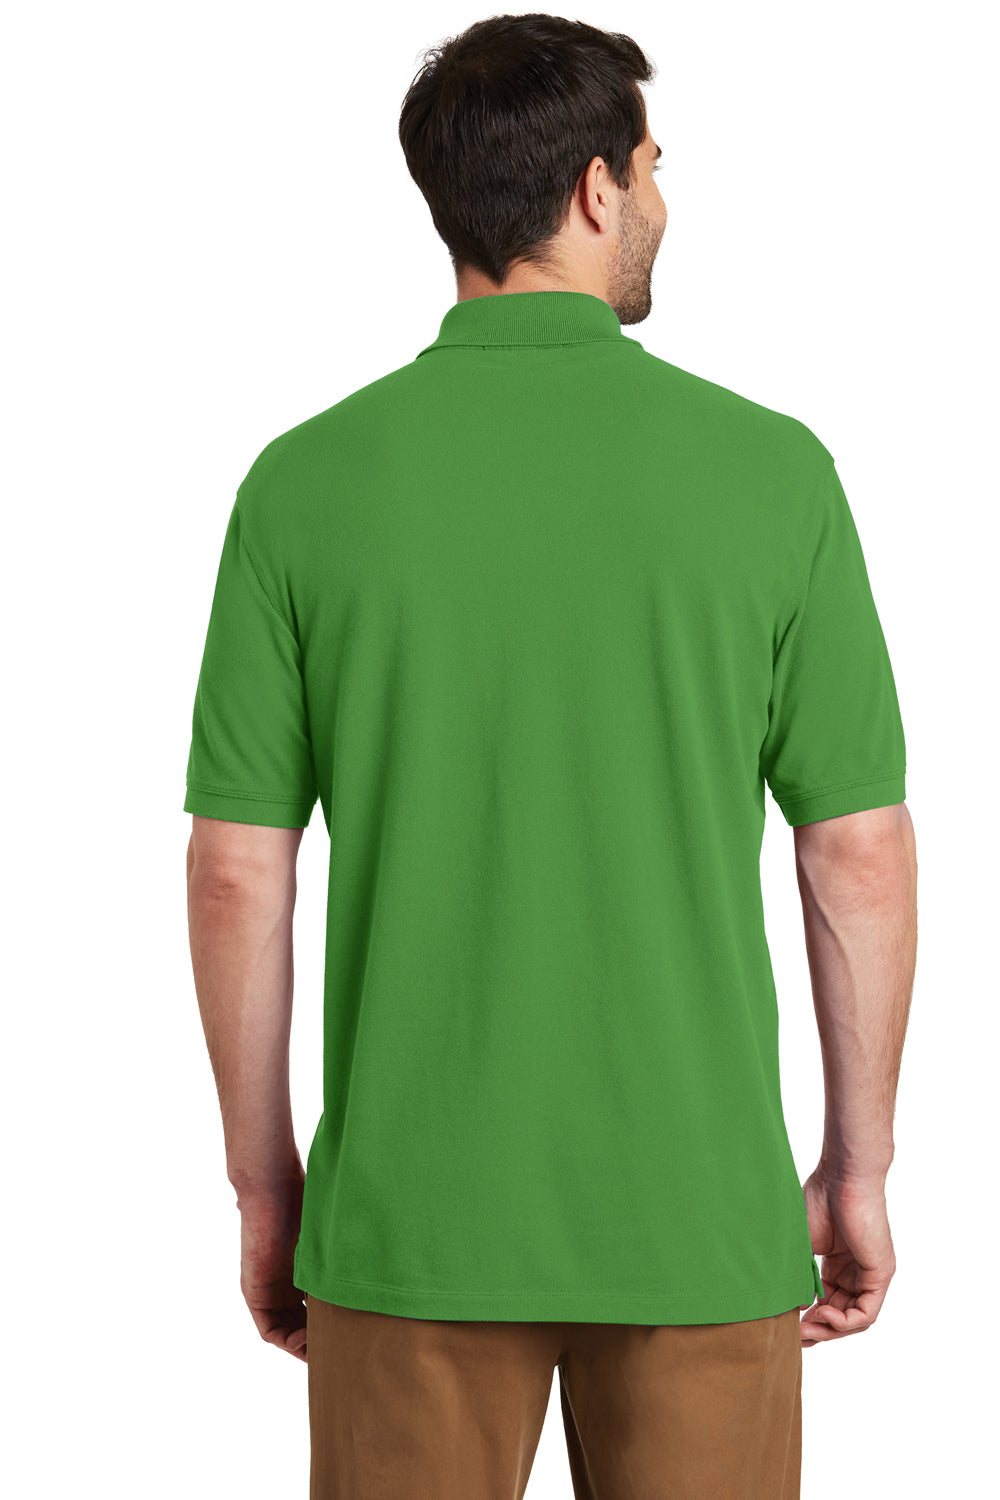 Port Authority K8000 Mens Wrinkle Resistant Short Sleeve Polo Shirt Vine Green Back